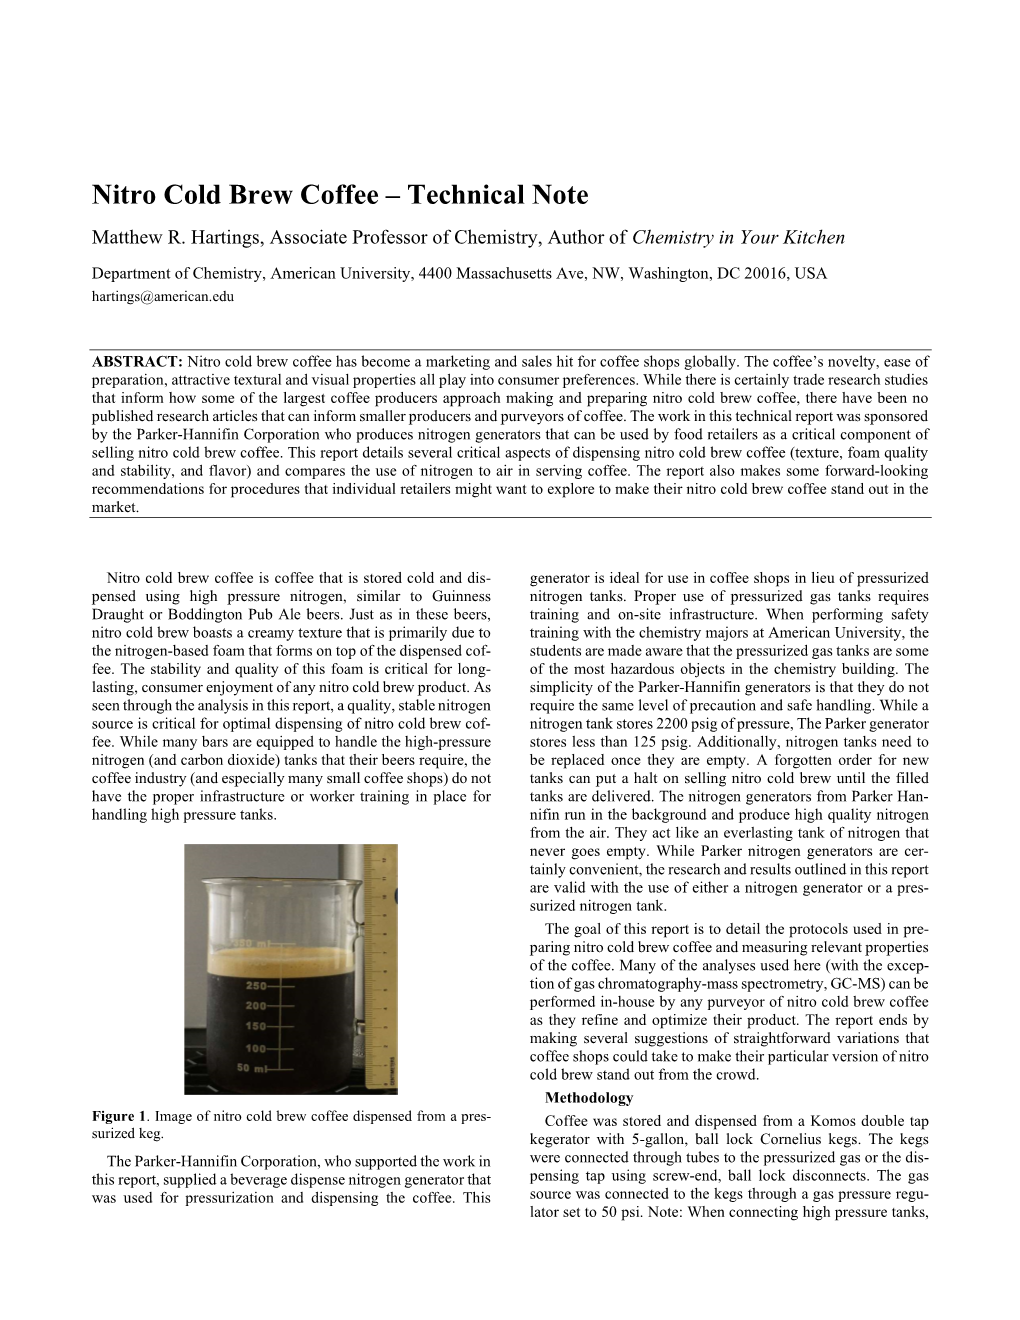 Nitro Cold Brew Coffee – Technical Note Matthew R